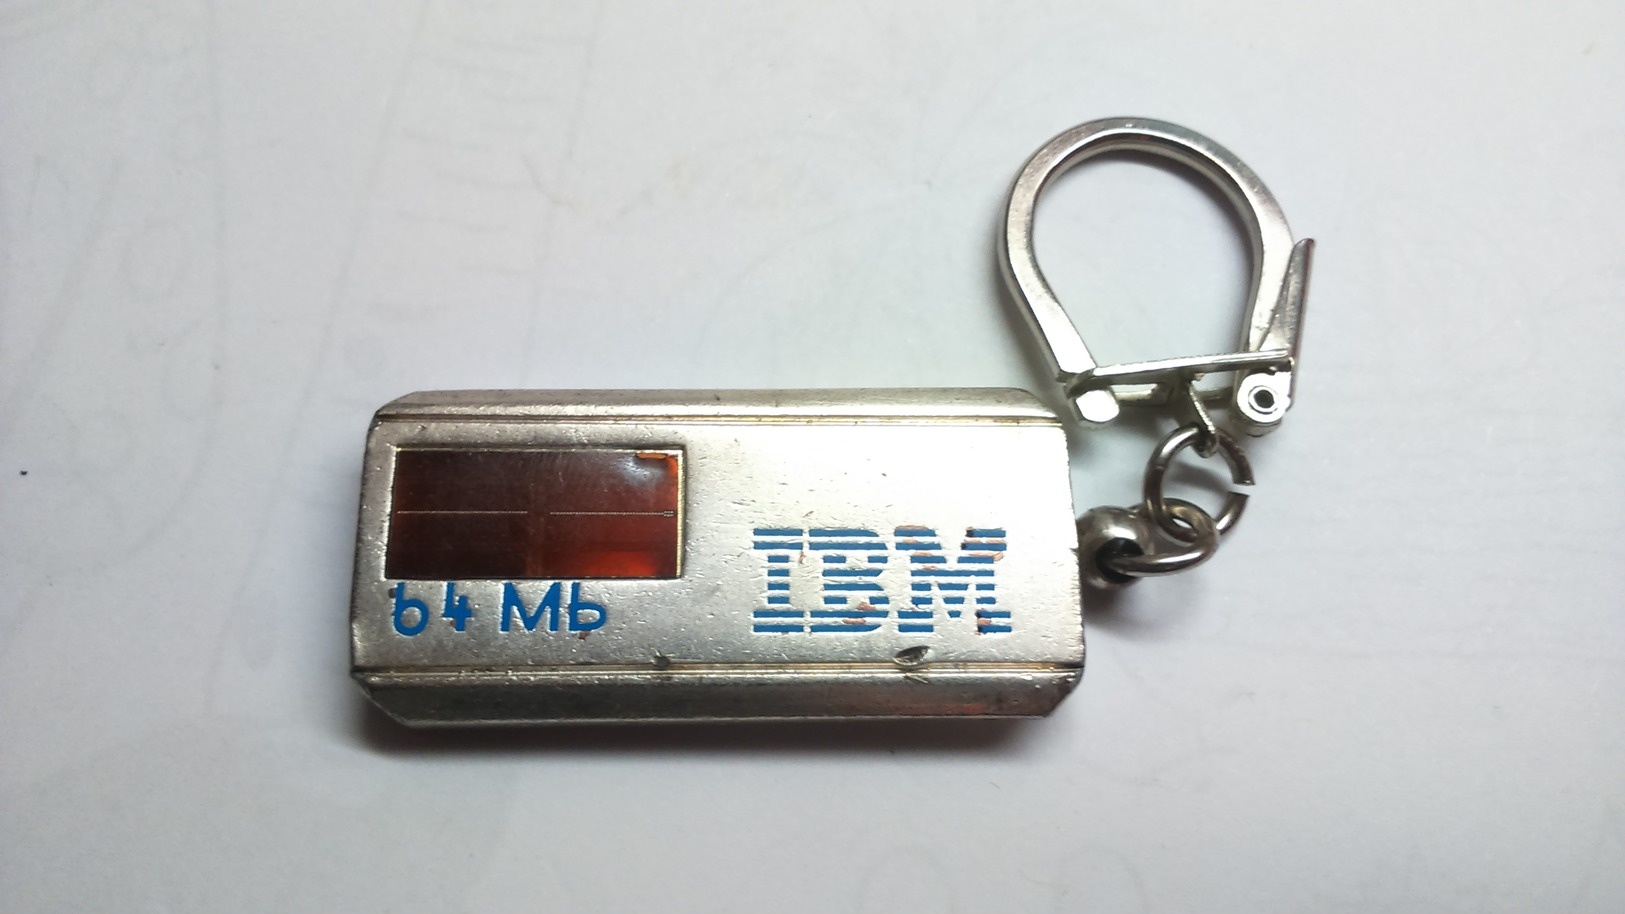 Porte Clés - IBM 64 MB - Ancien Porte Cléfs Clé - Key-rings